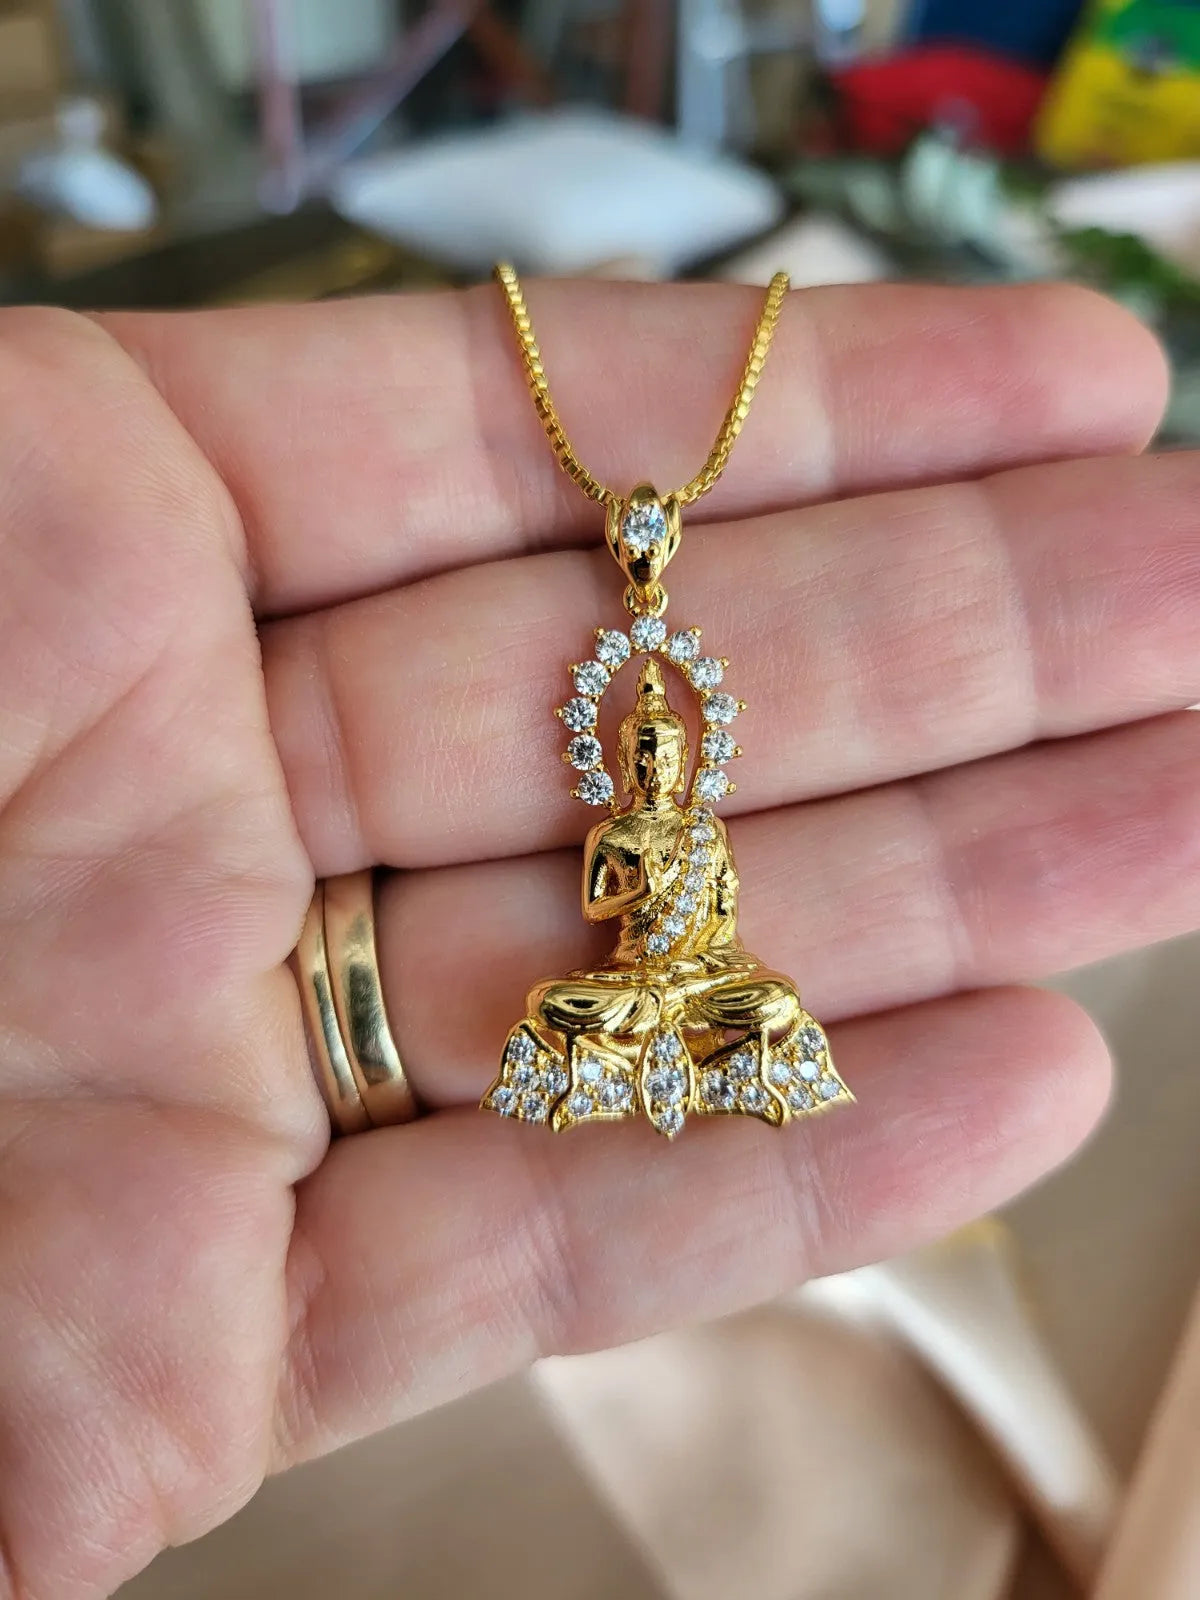 Gold Meditation Buddha Necklace product images.